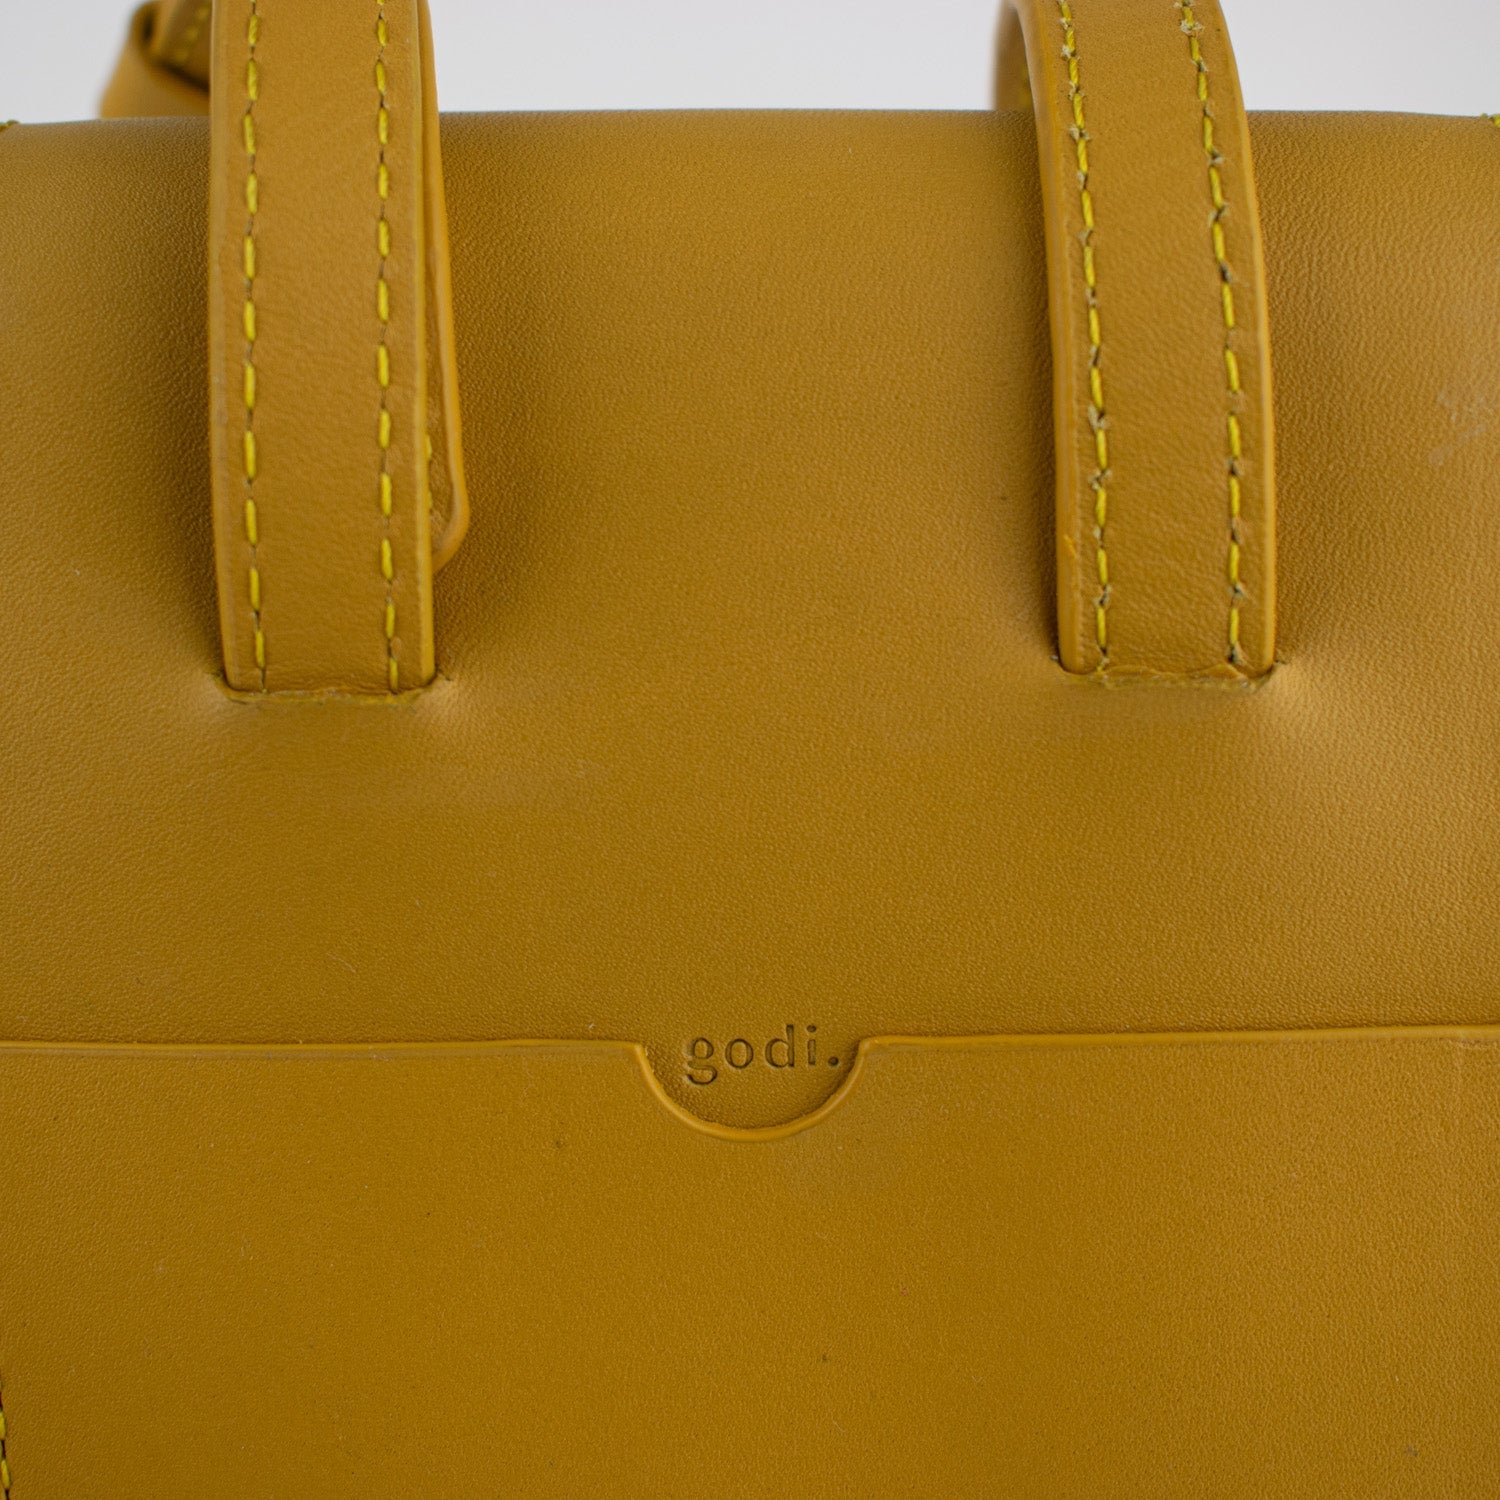 Adjustable Phone Bag in Rust Brown